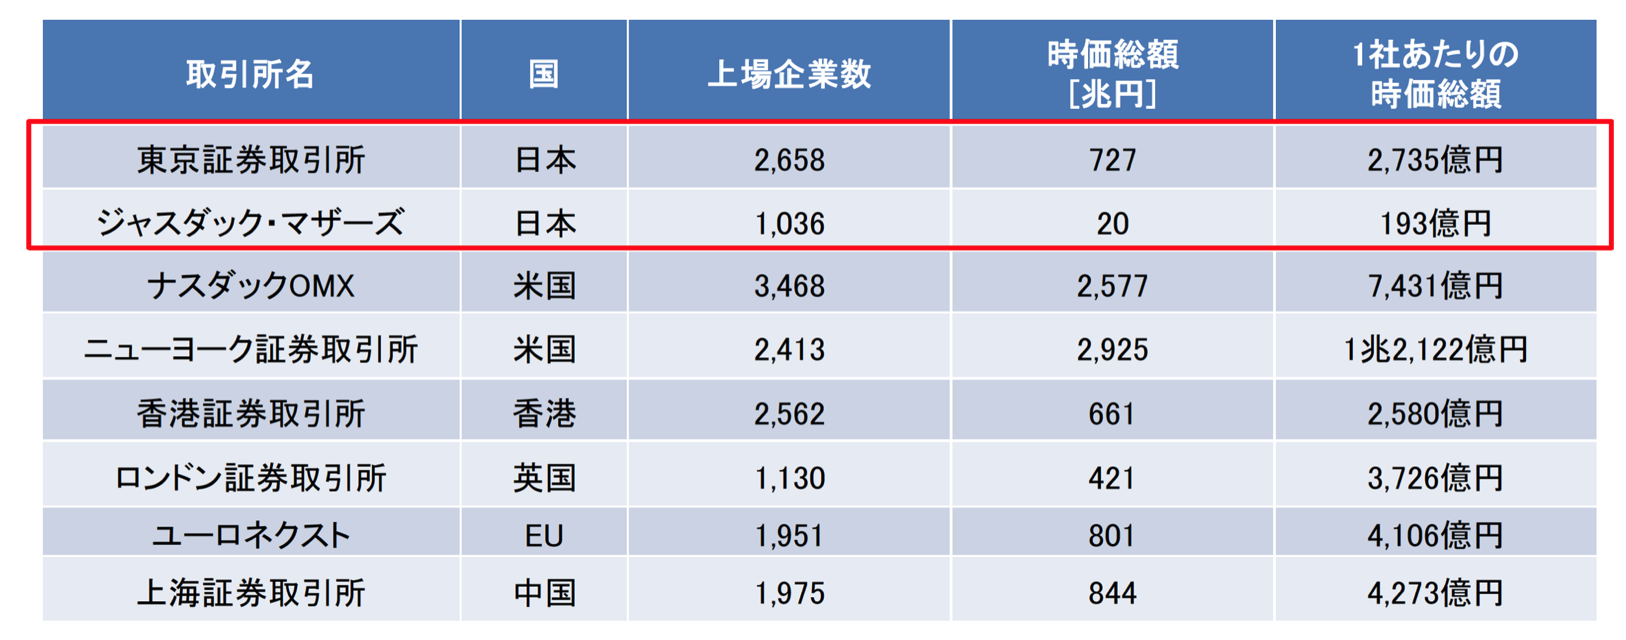 日本の多い上場企業数